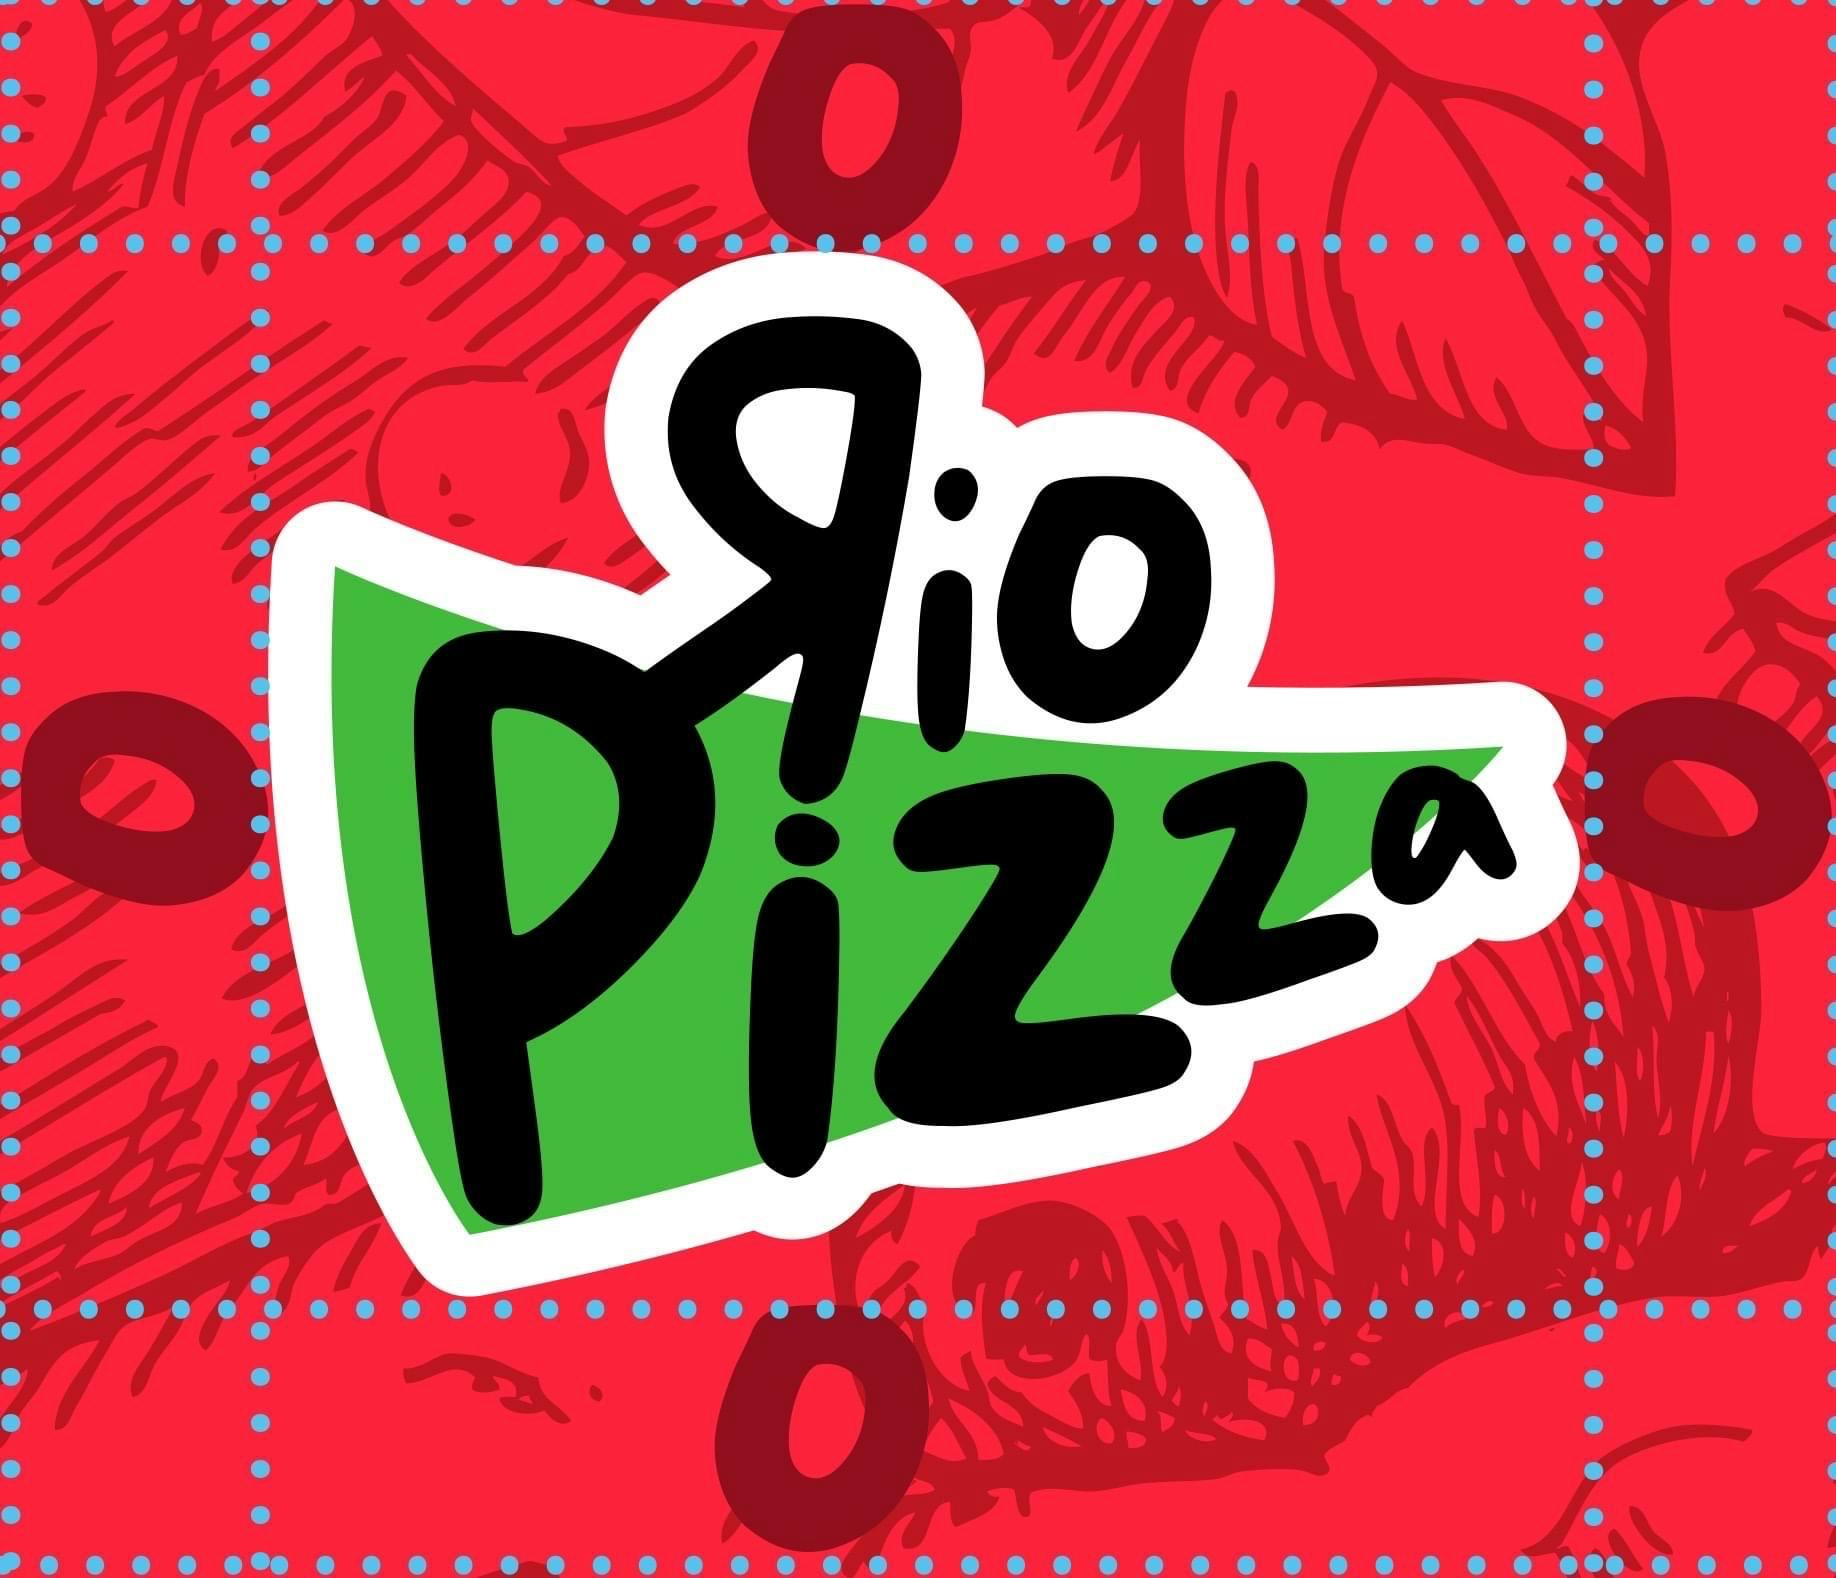 Rio Pizzeria